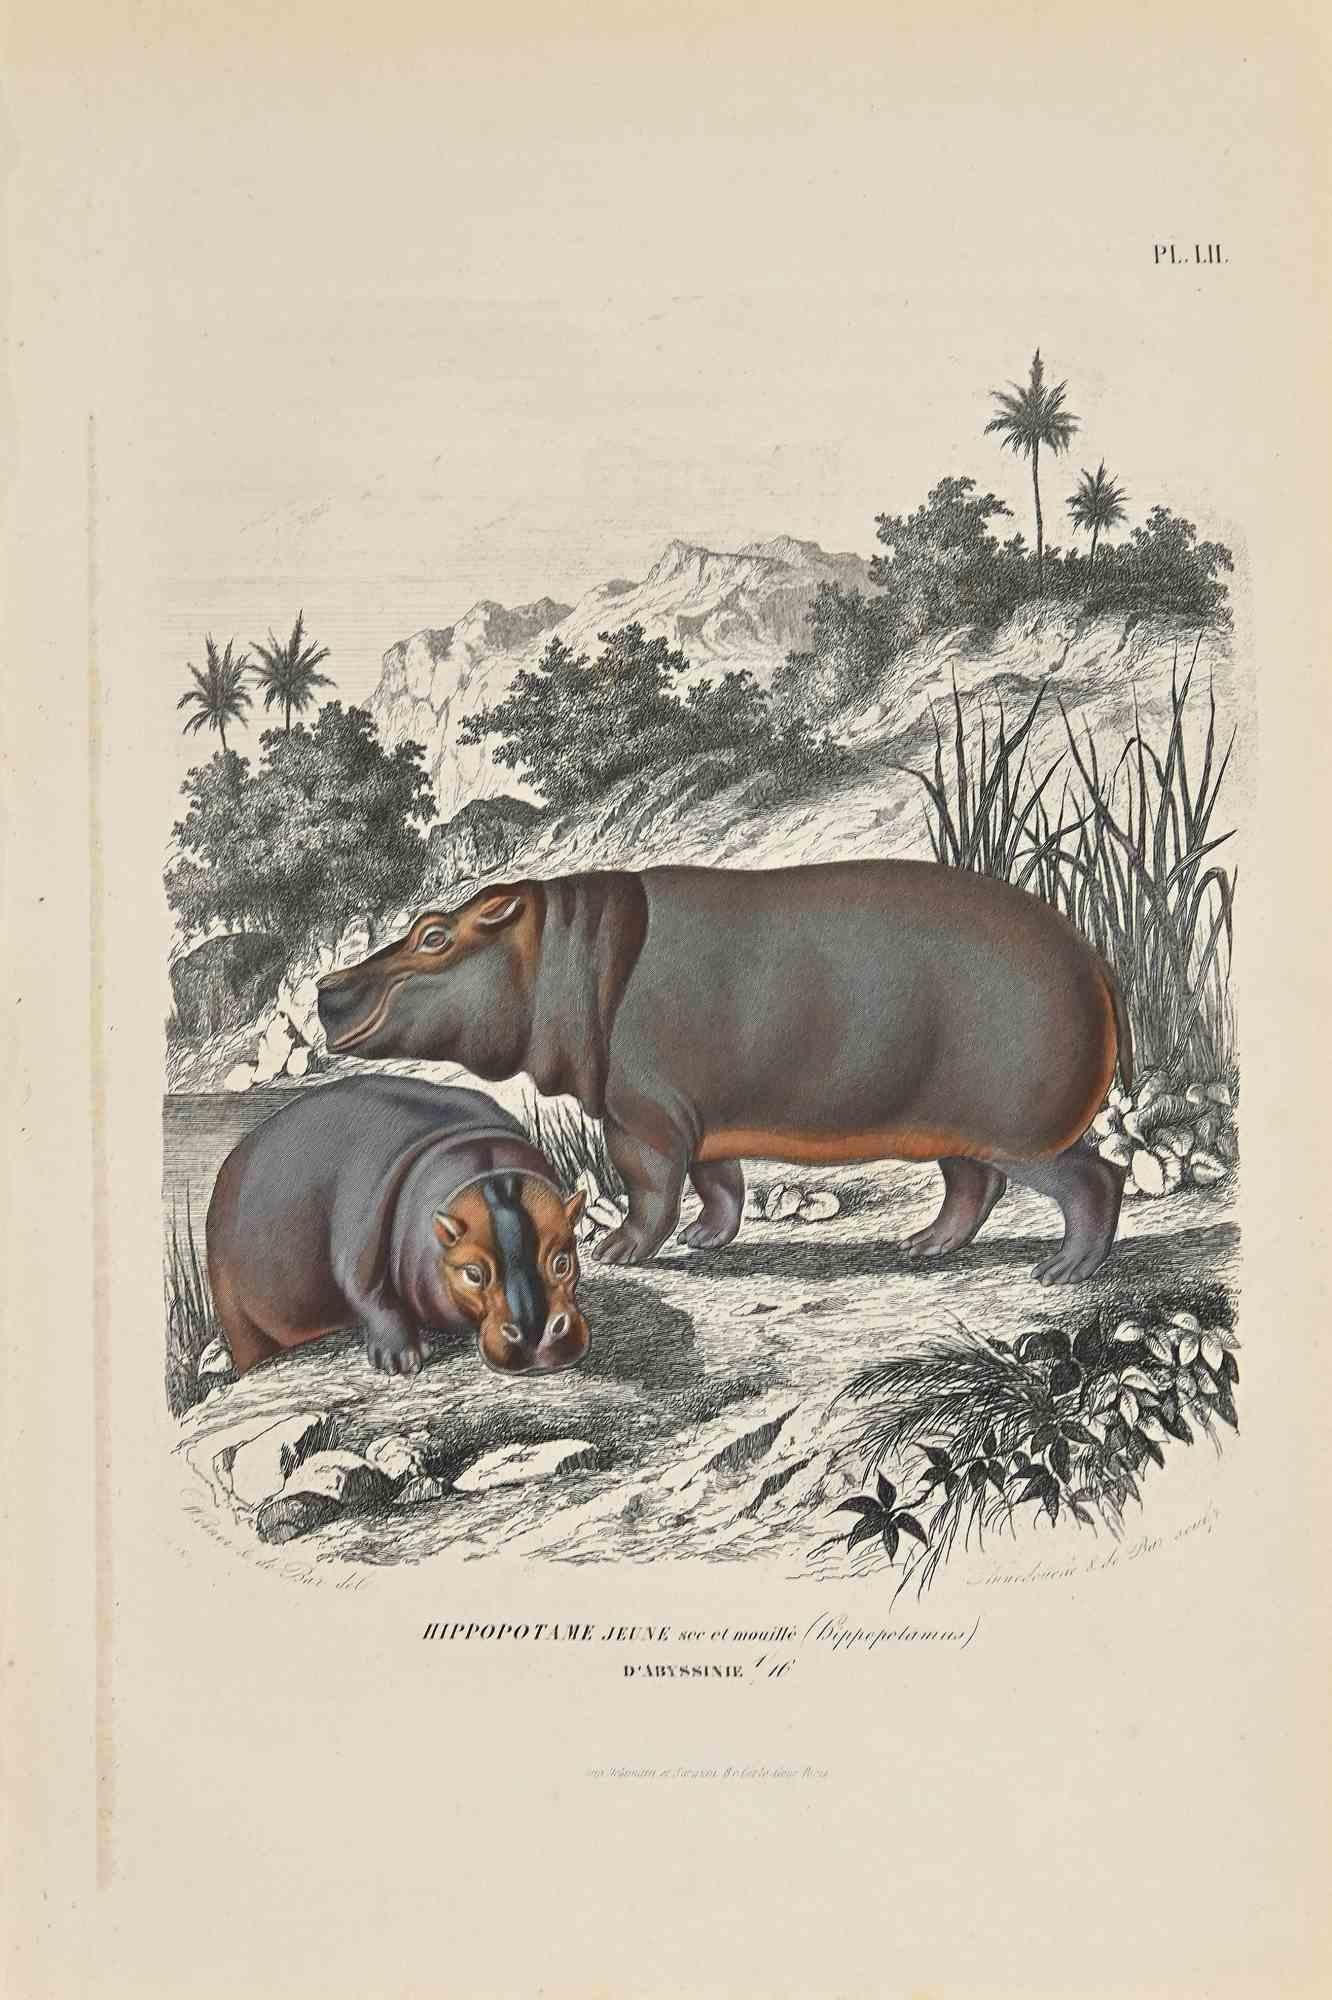 Junges Nilpferd ist eine Originallithographie mit Schablone auf elfenbeinfarbenem Papier, realisiert von Paul Gervais (1816-1879). Das Kunstwerk stammt aus der Serie "Les Trois Règnes de la Nature" und wurde 1854 veröffentlicht.

Gute